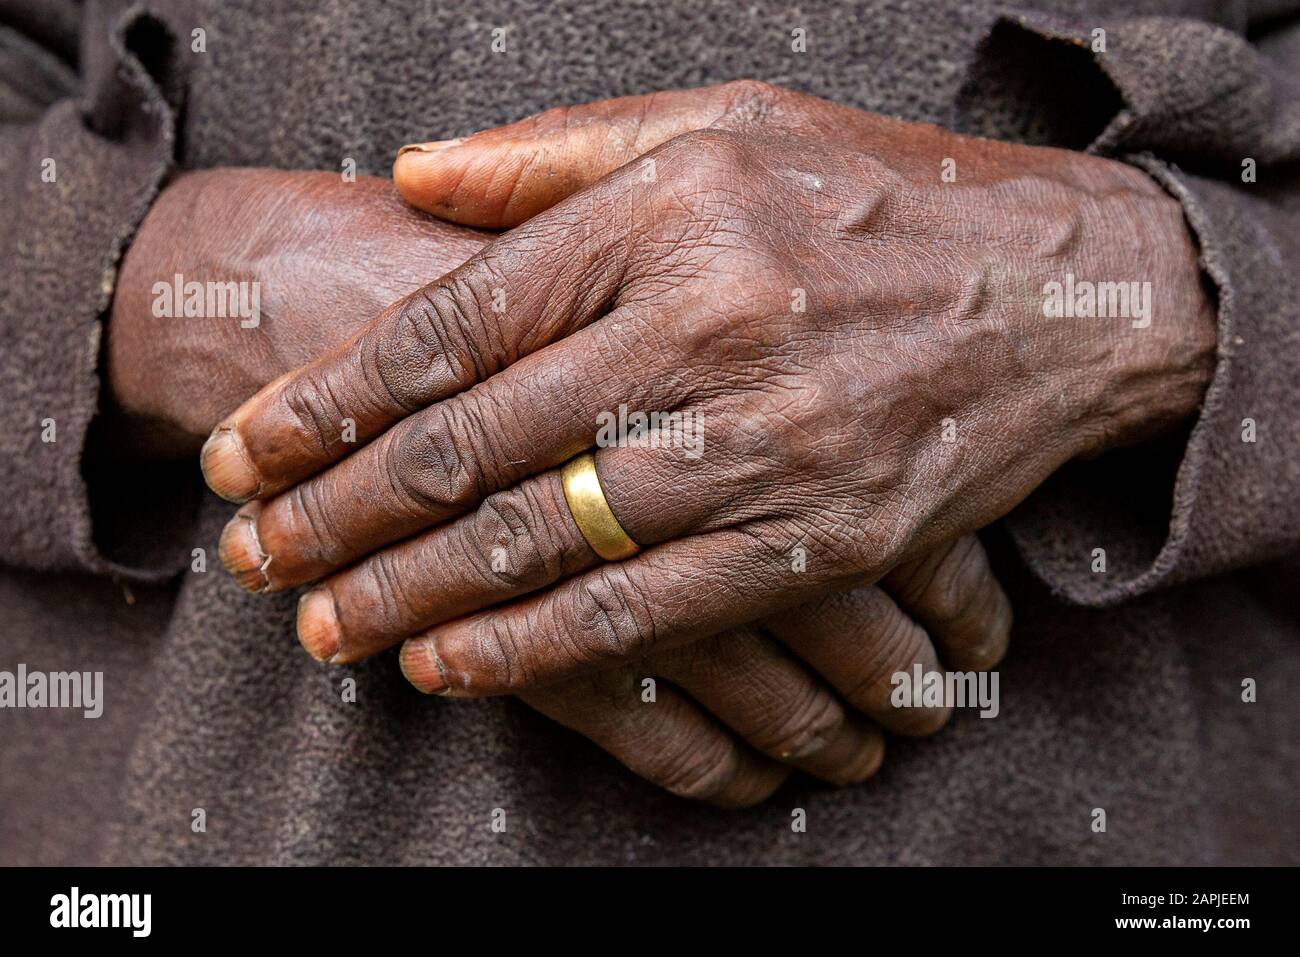 Hands of elderly woman in Uganda, Africa Stock Photo